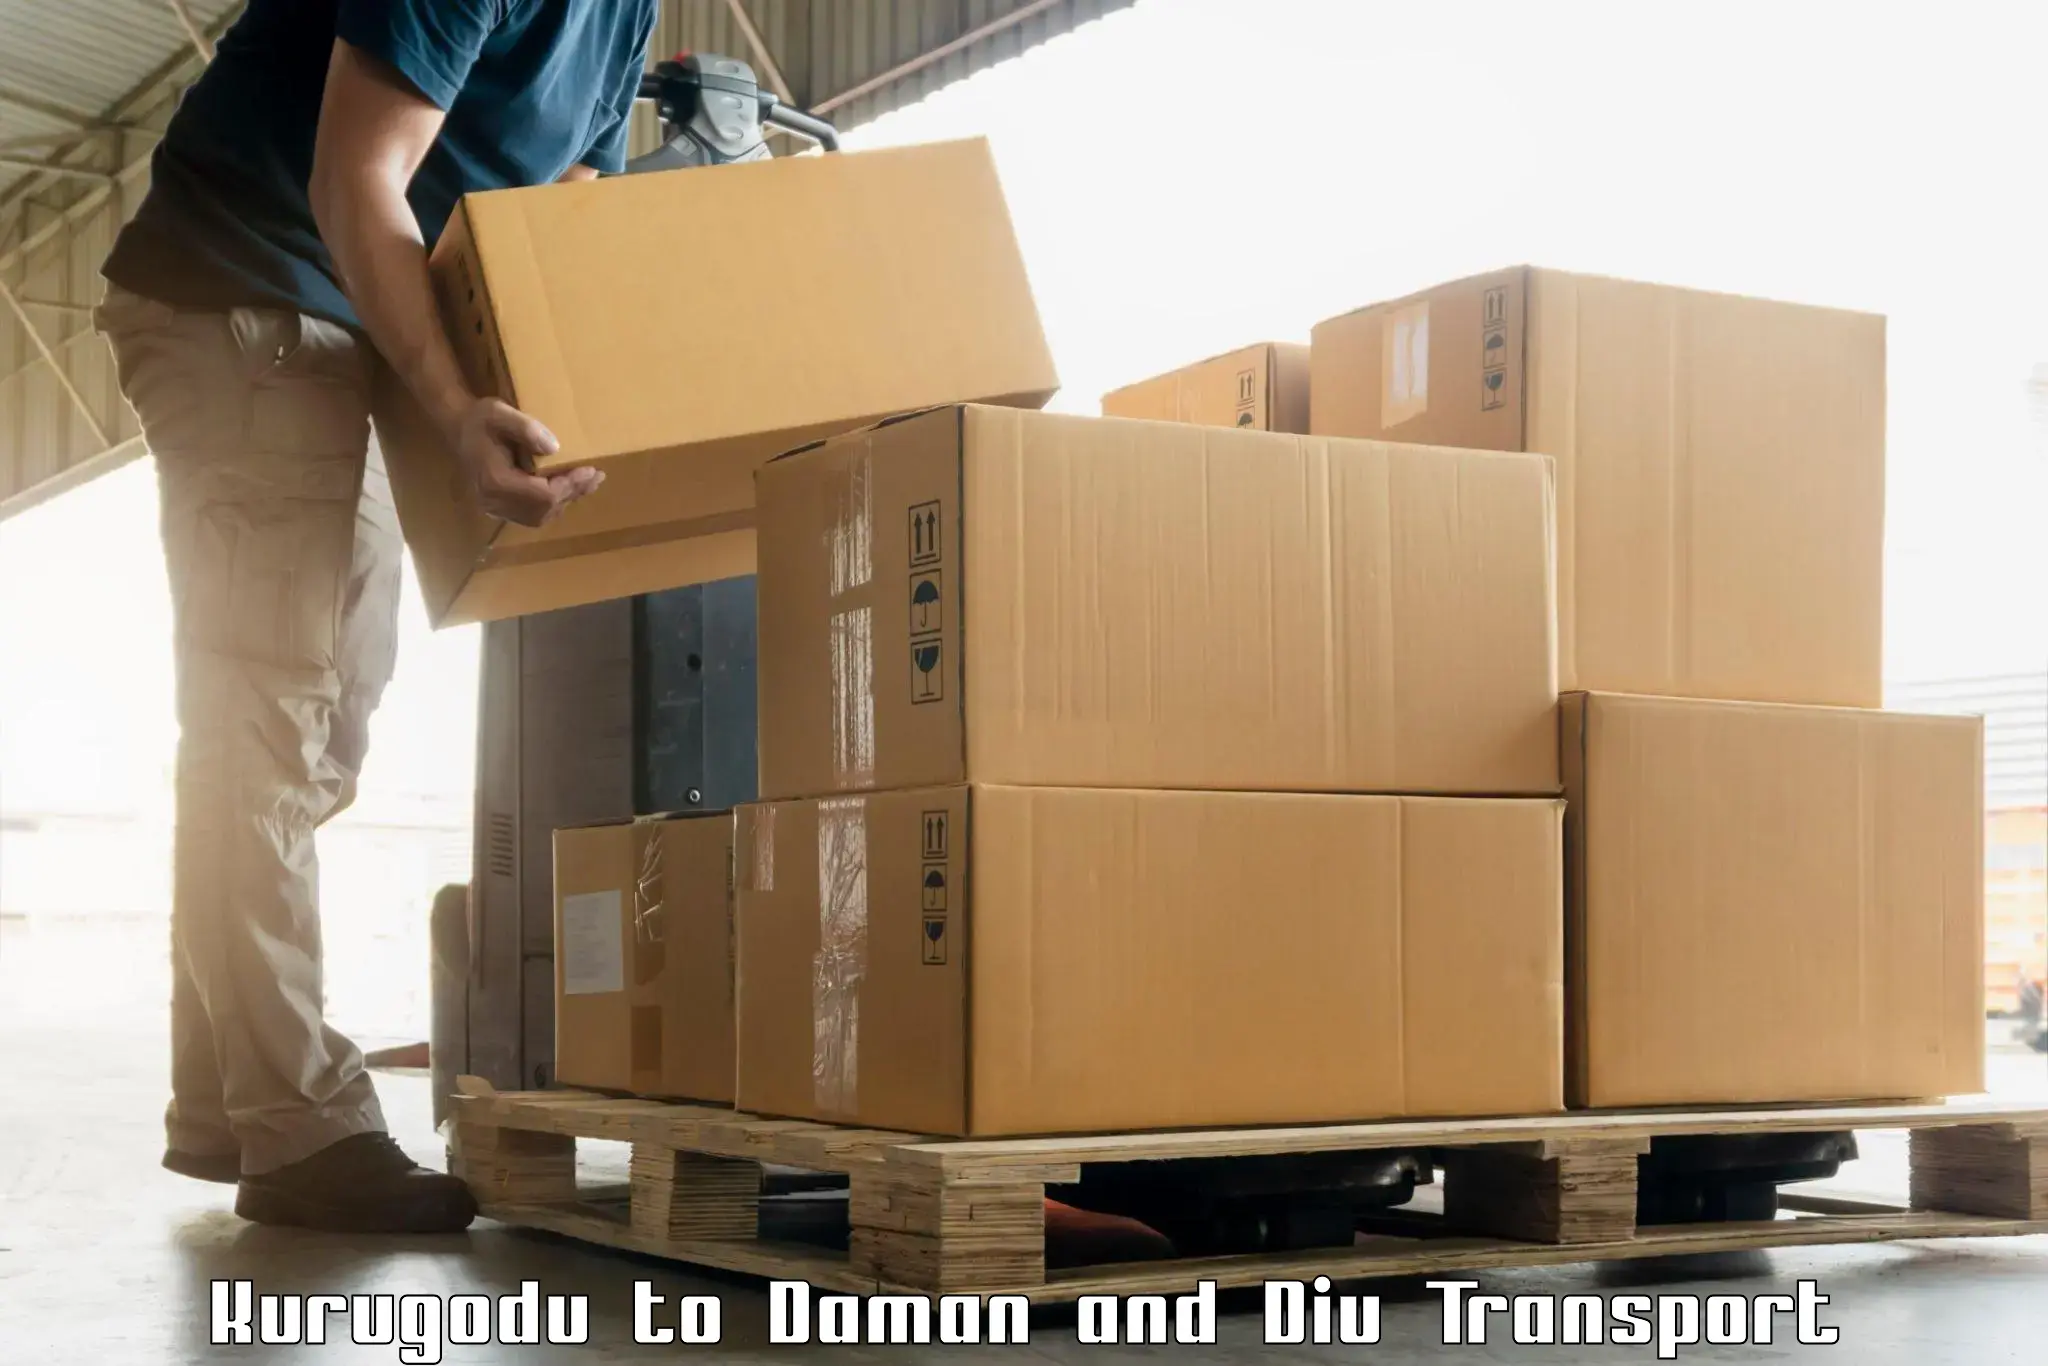 Container transport service Kurugodu to Daman and Diu